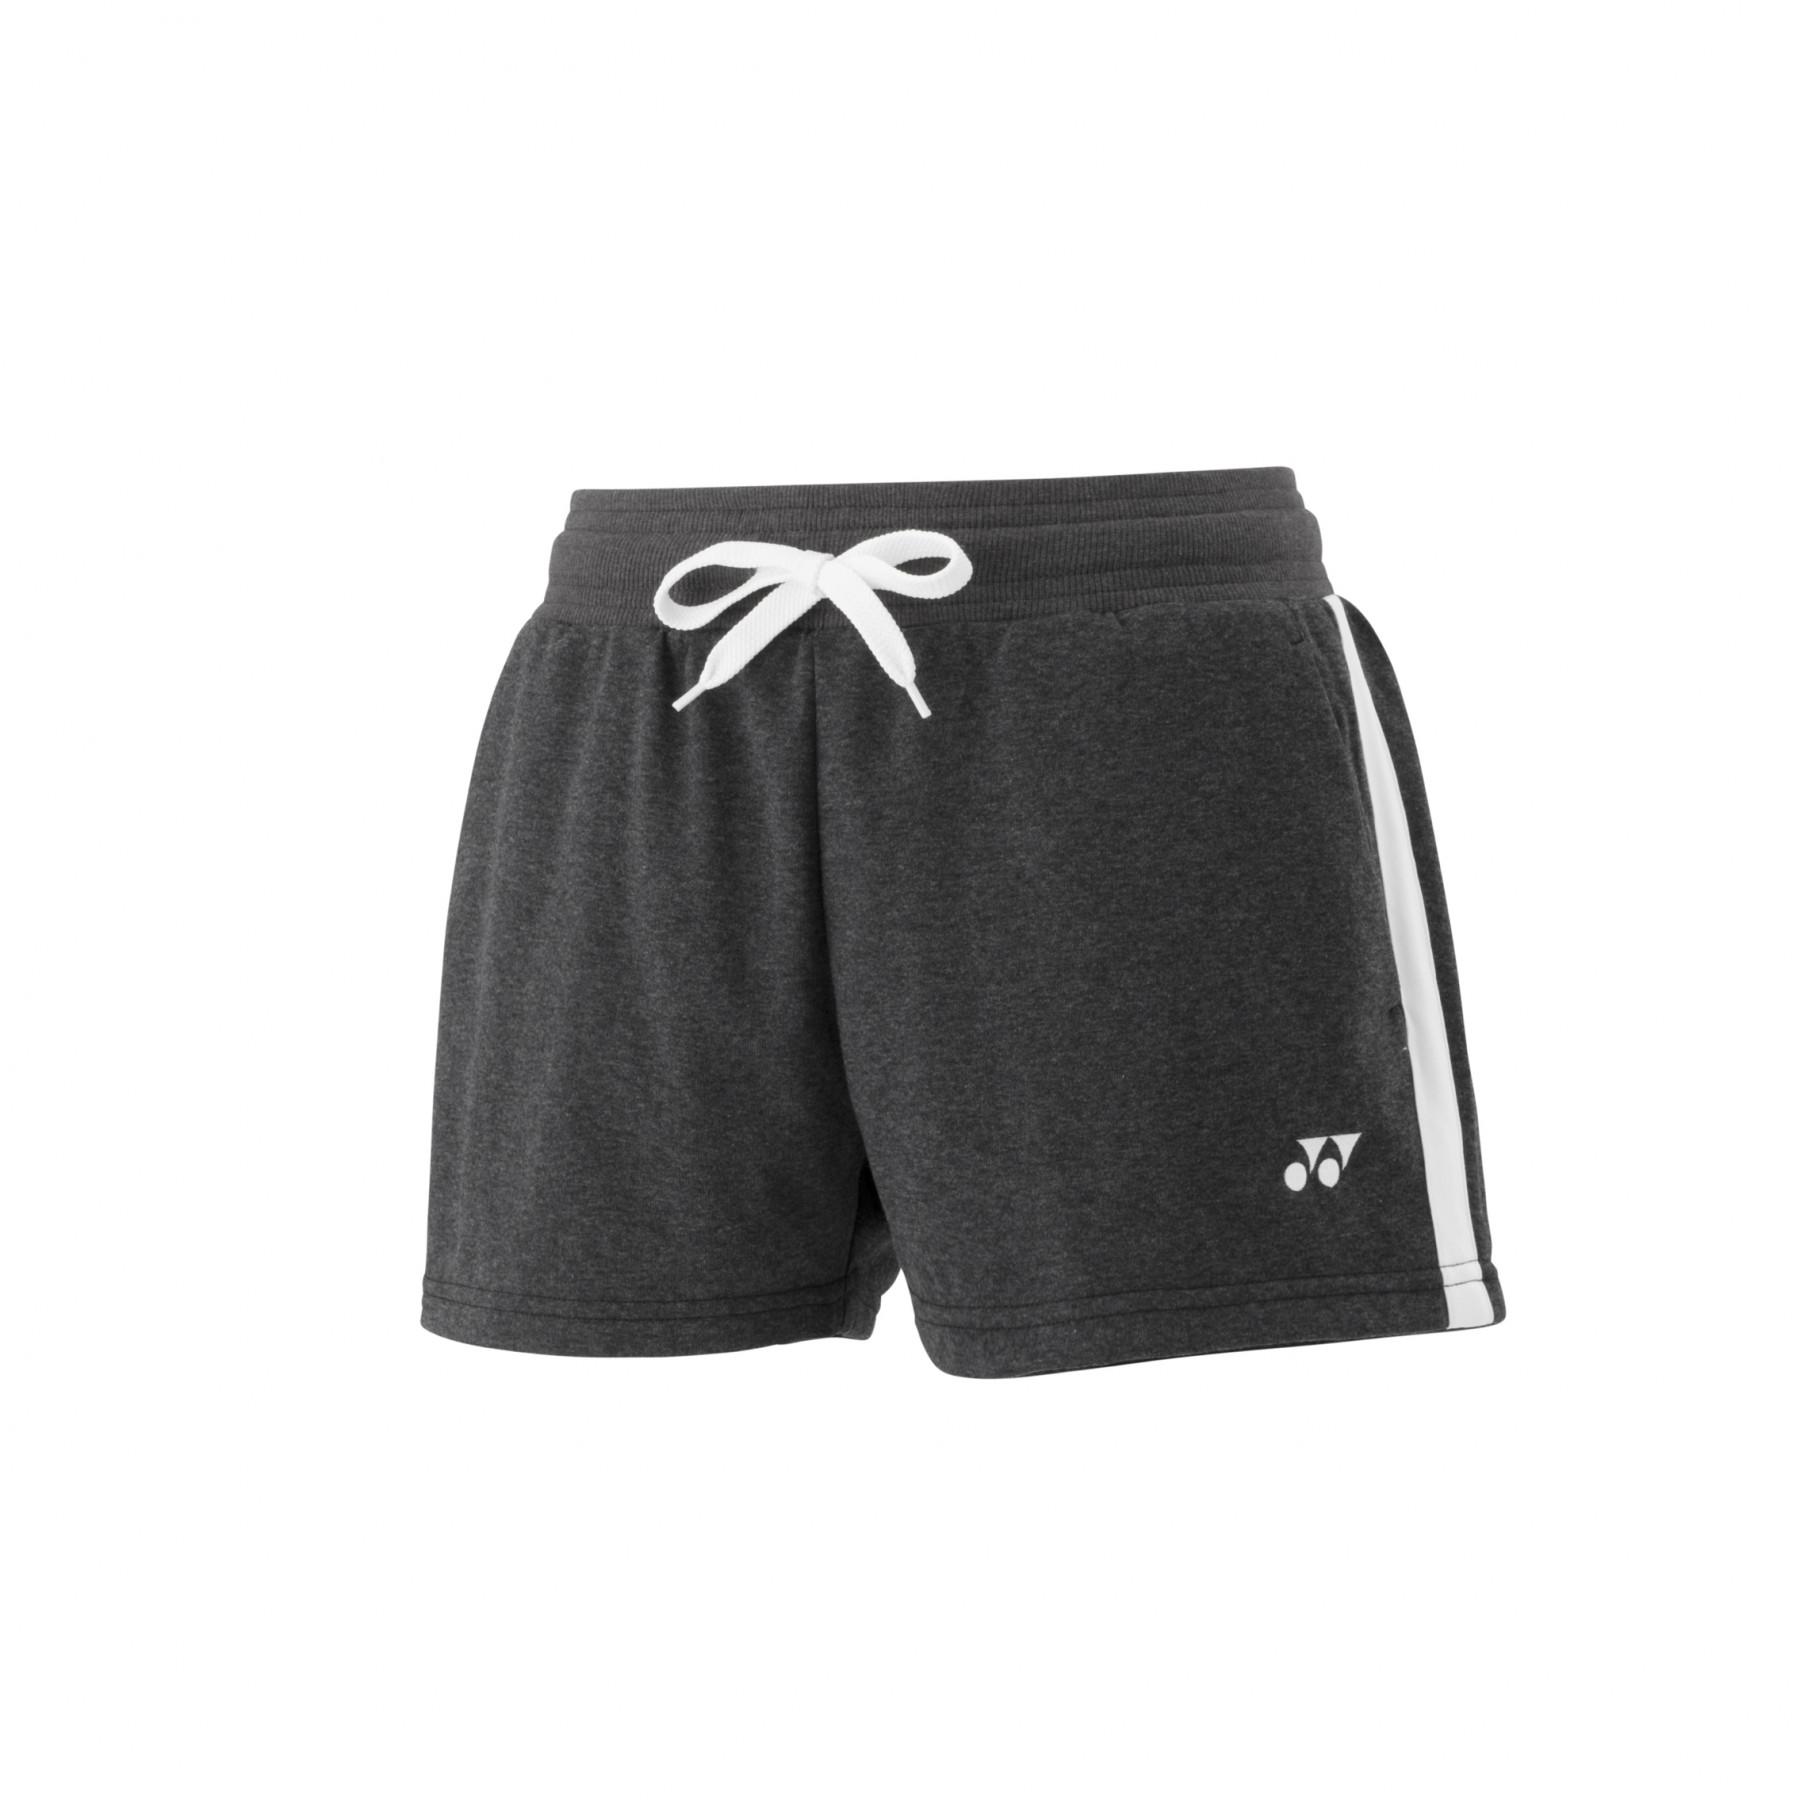 Women's shorts Yonex yw0015ex